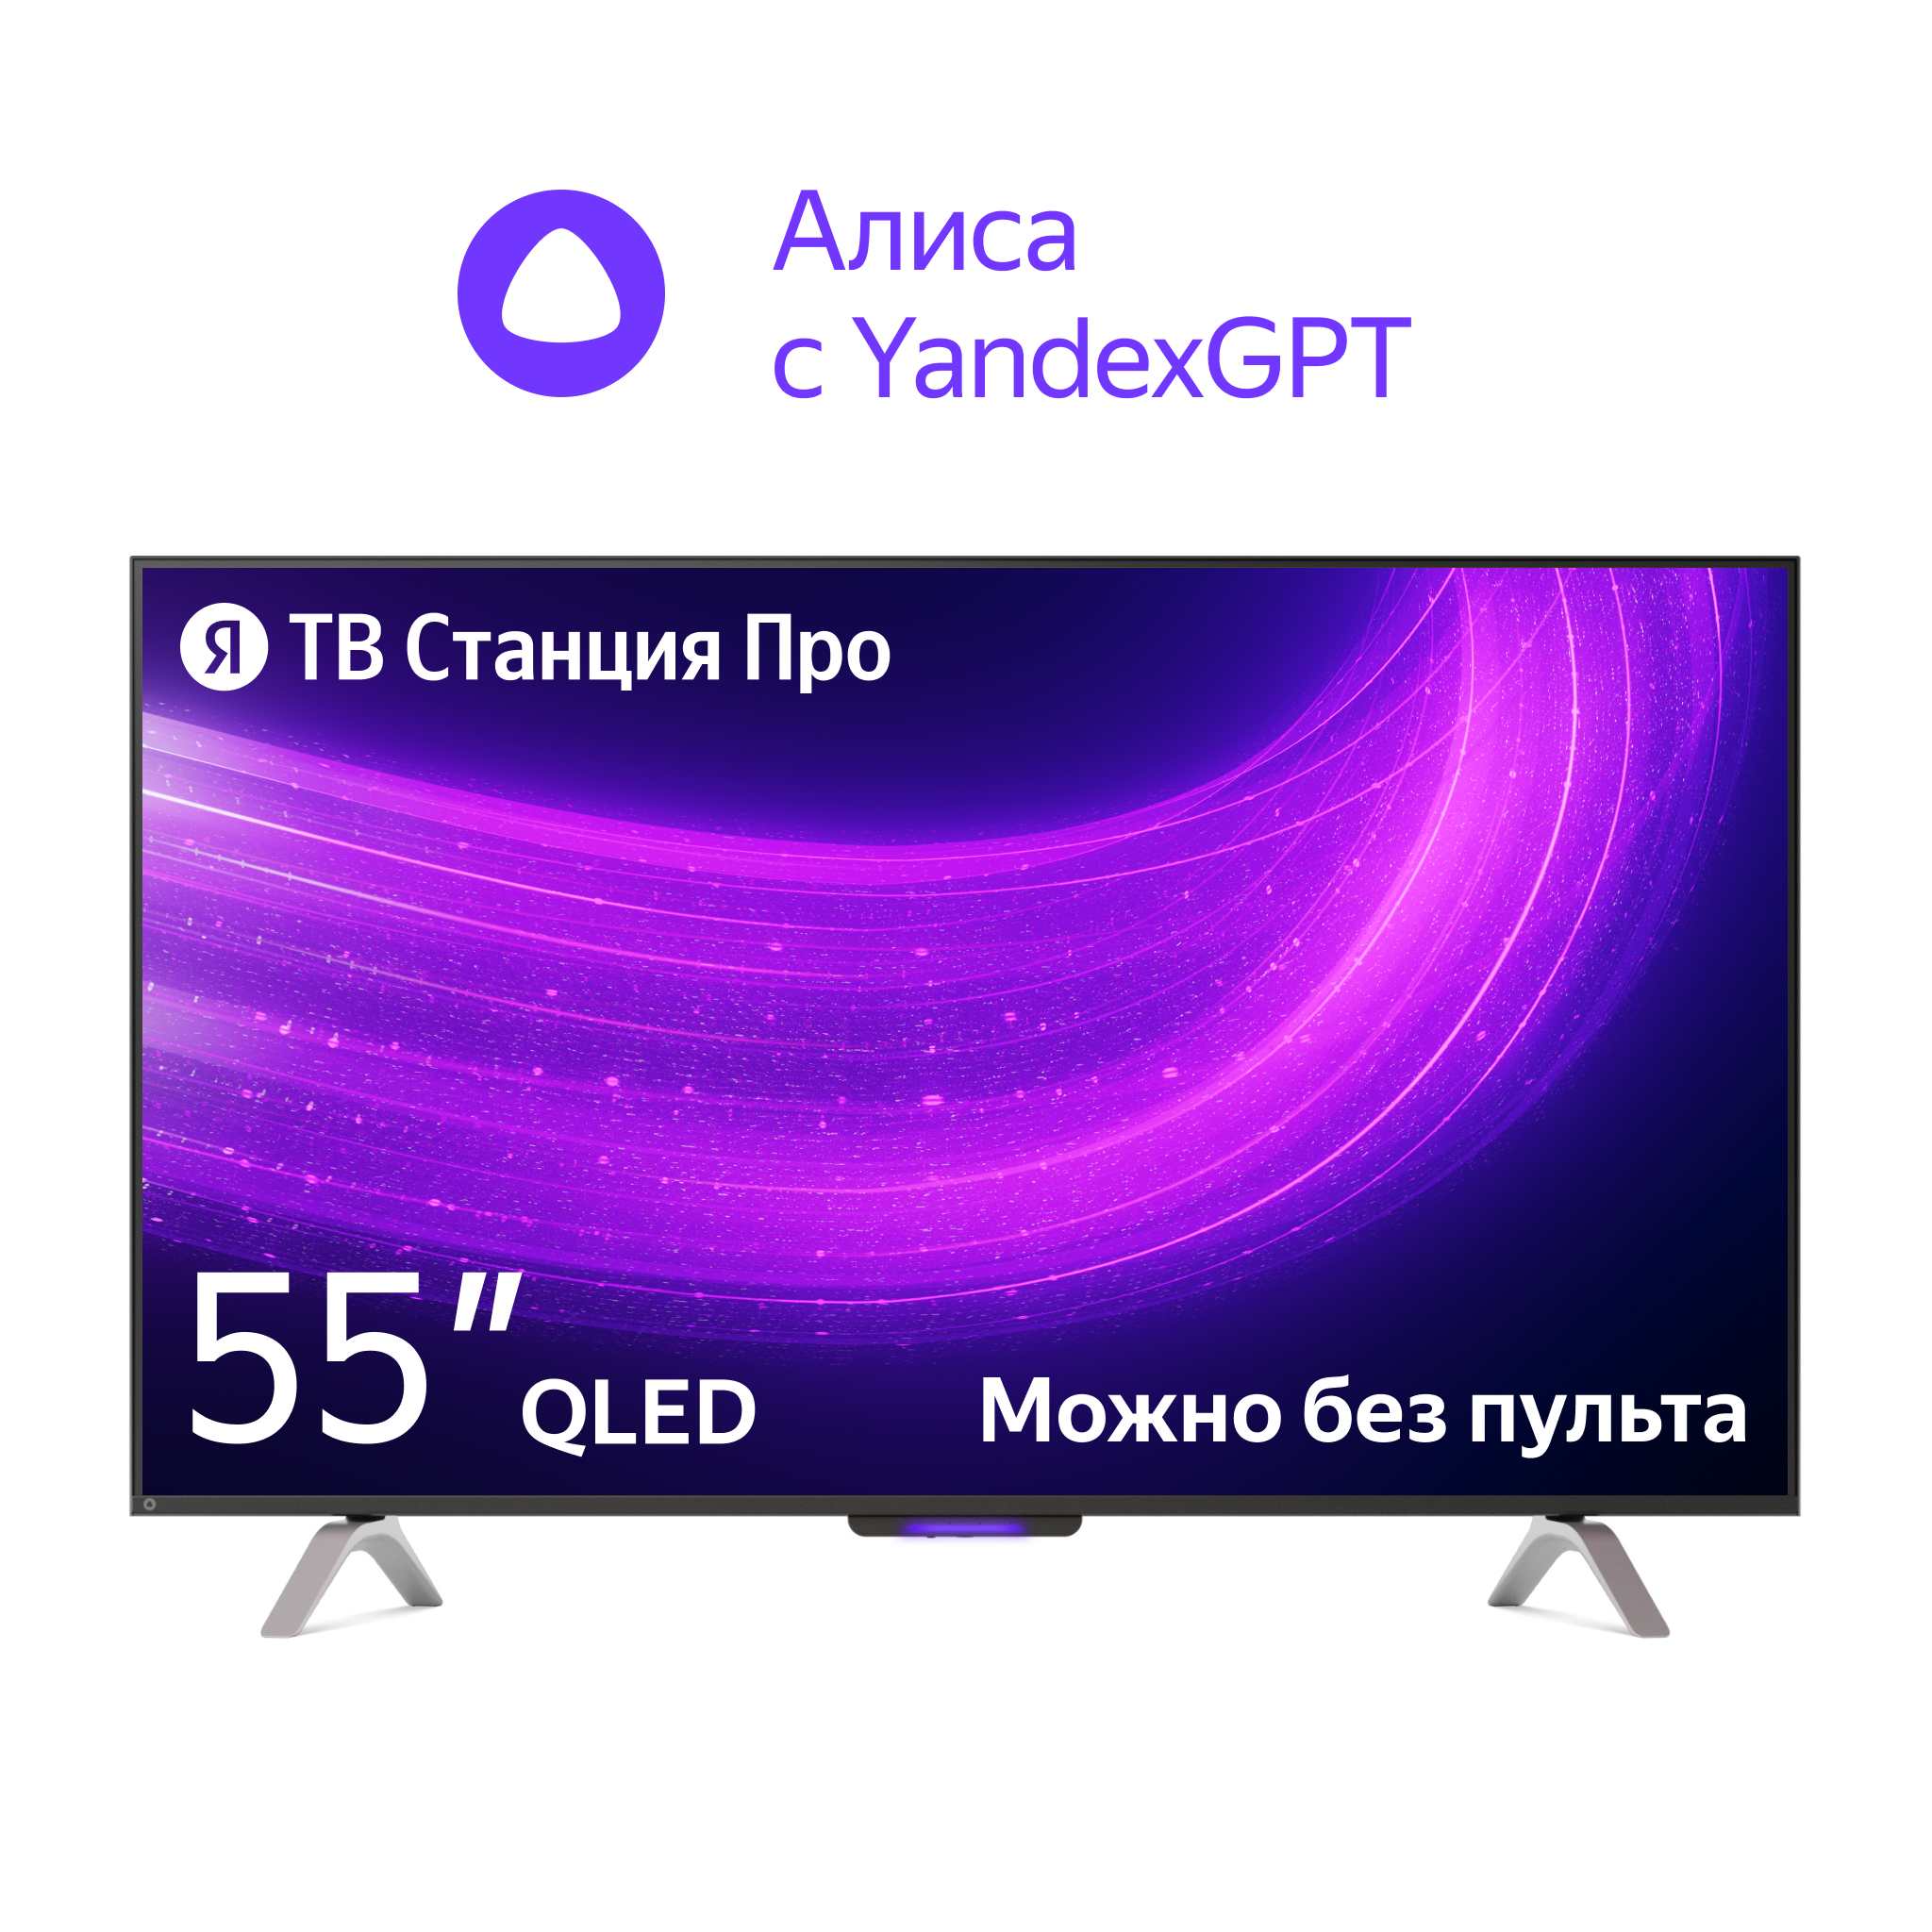 4K (Ultra HD) Smart телевизор Yandex яндекс тв станция про 55